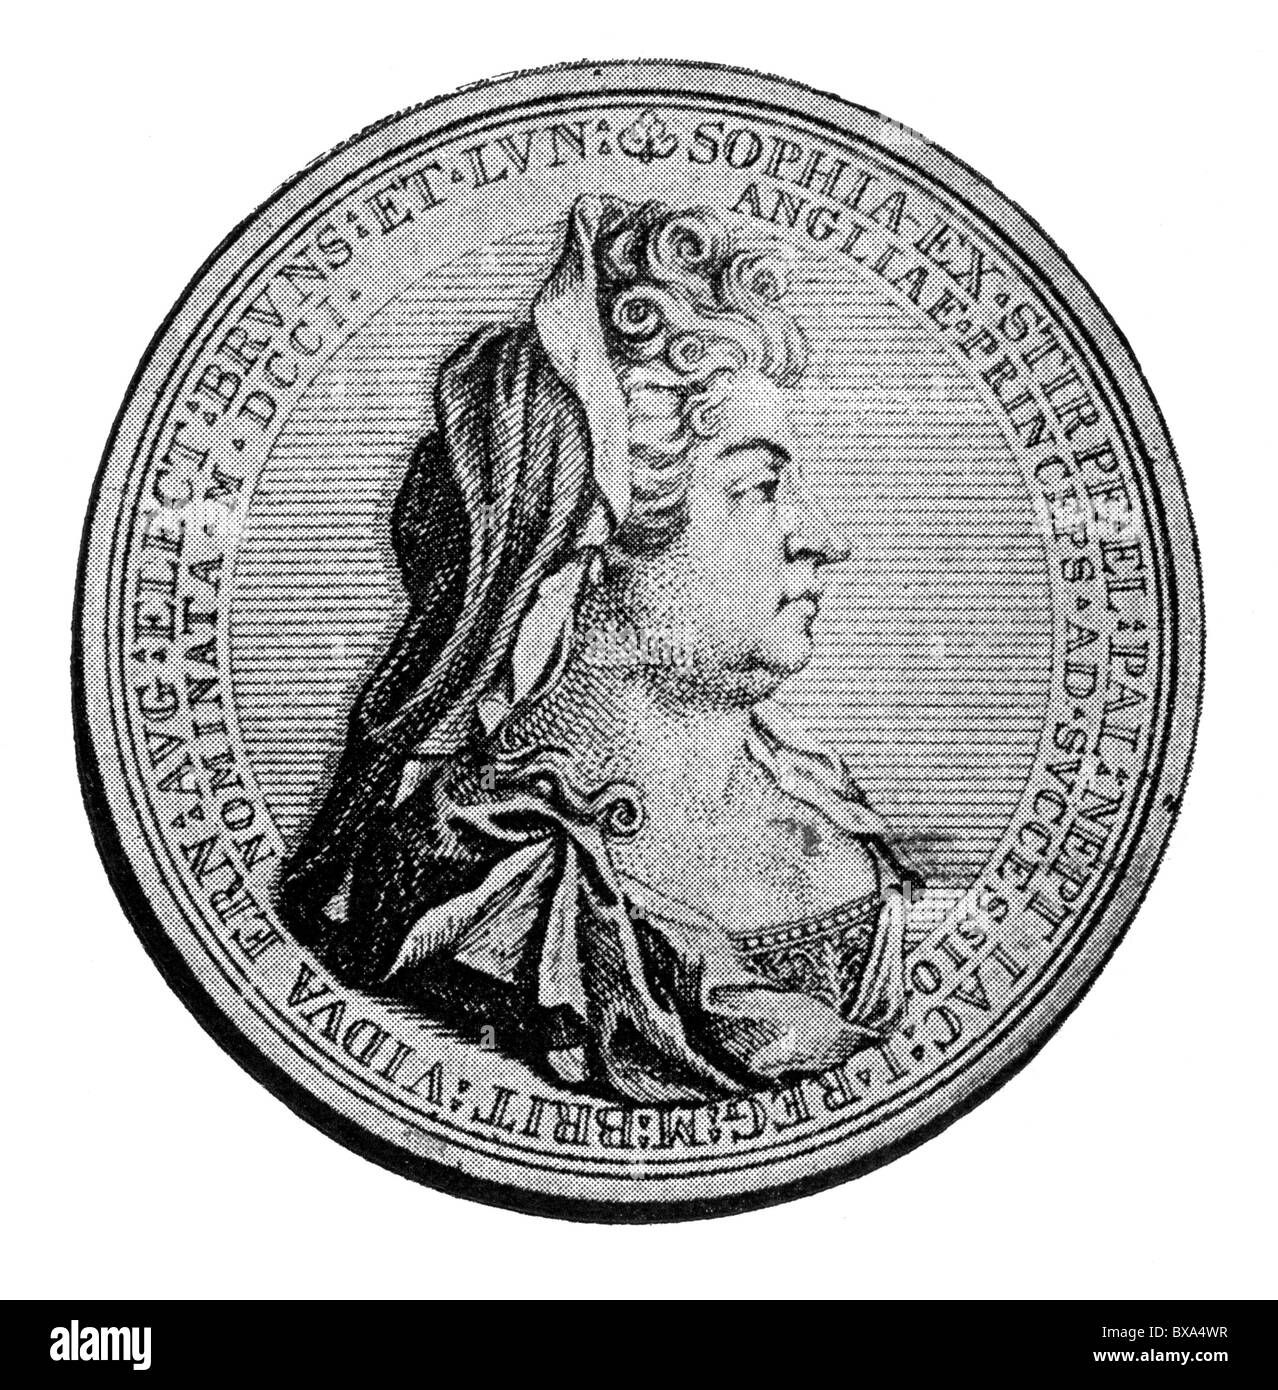 Los Electress Sophia; Medalla golpeó a conmemorar el Acto de Sucesión; ilustración en blanco y negro. Foto de stock